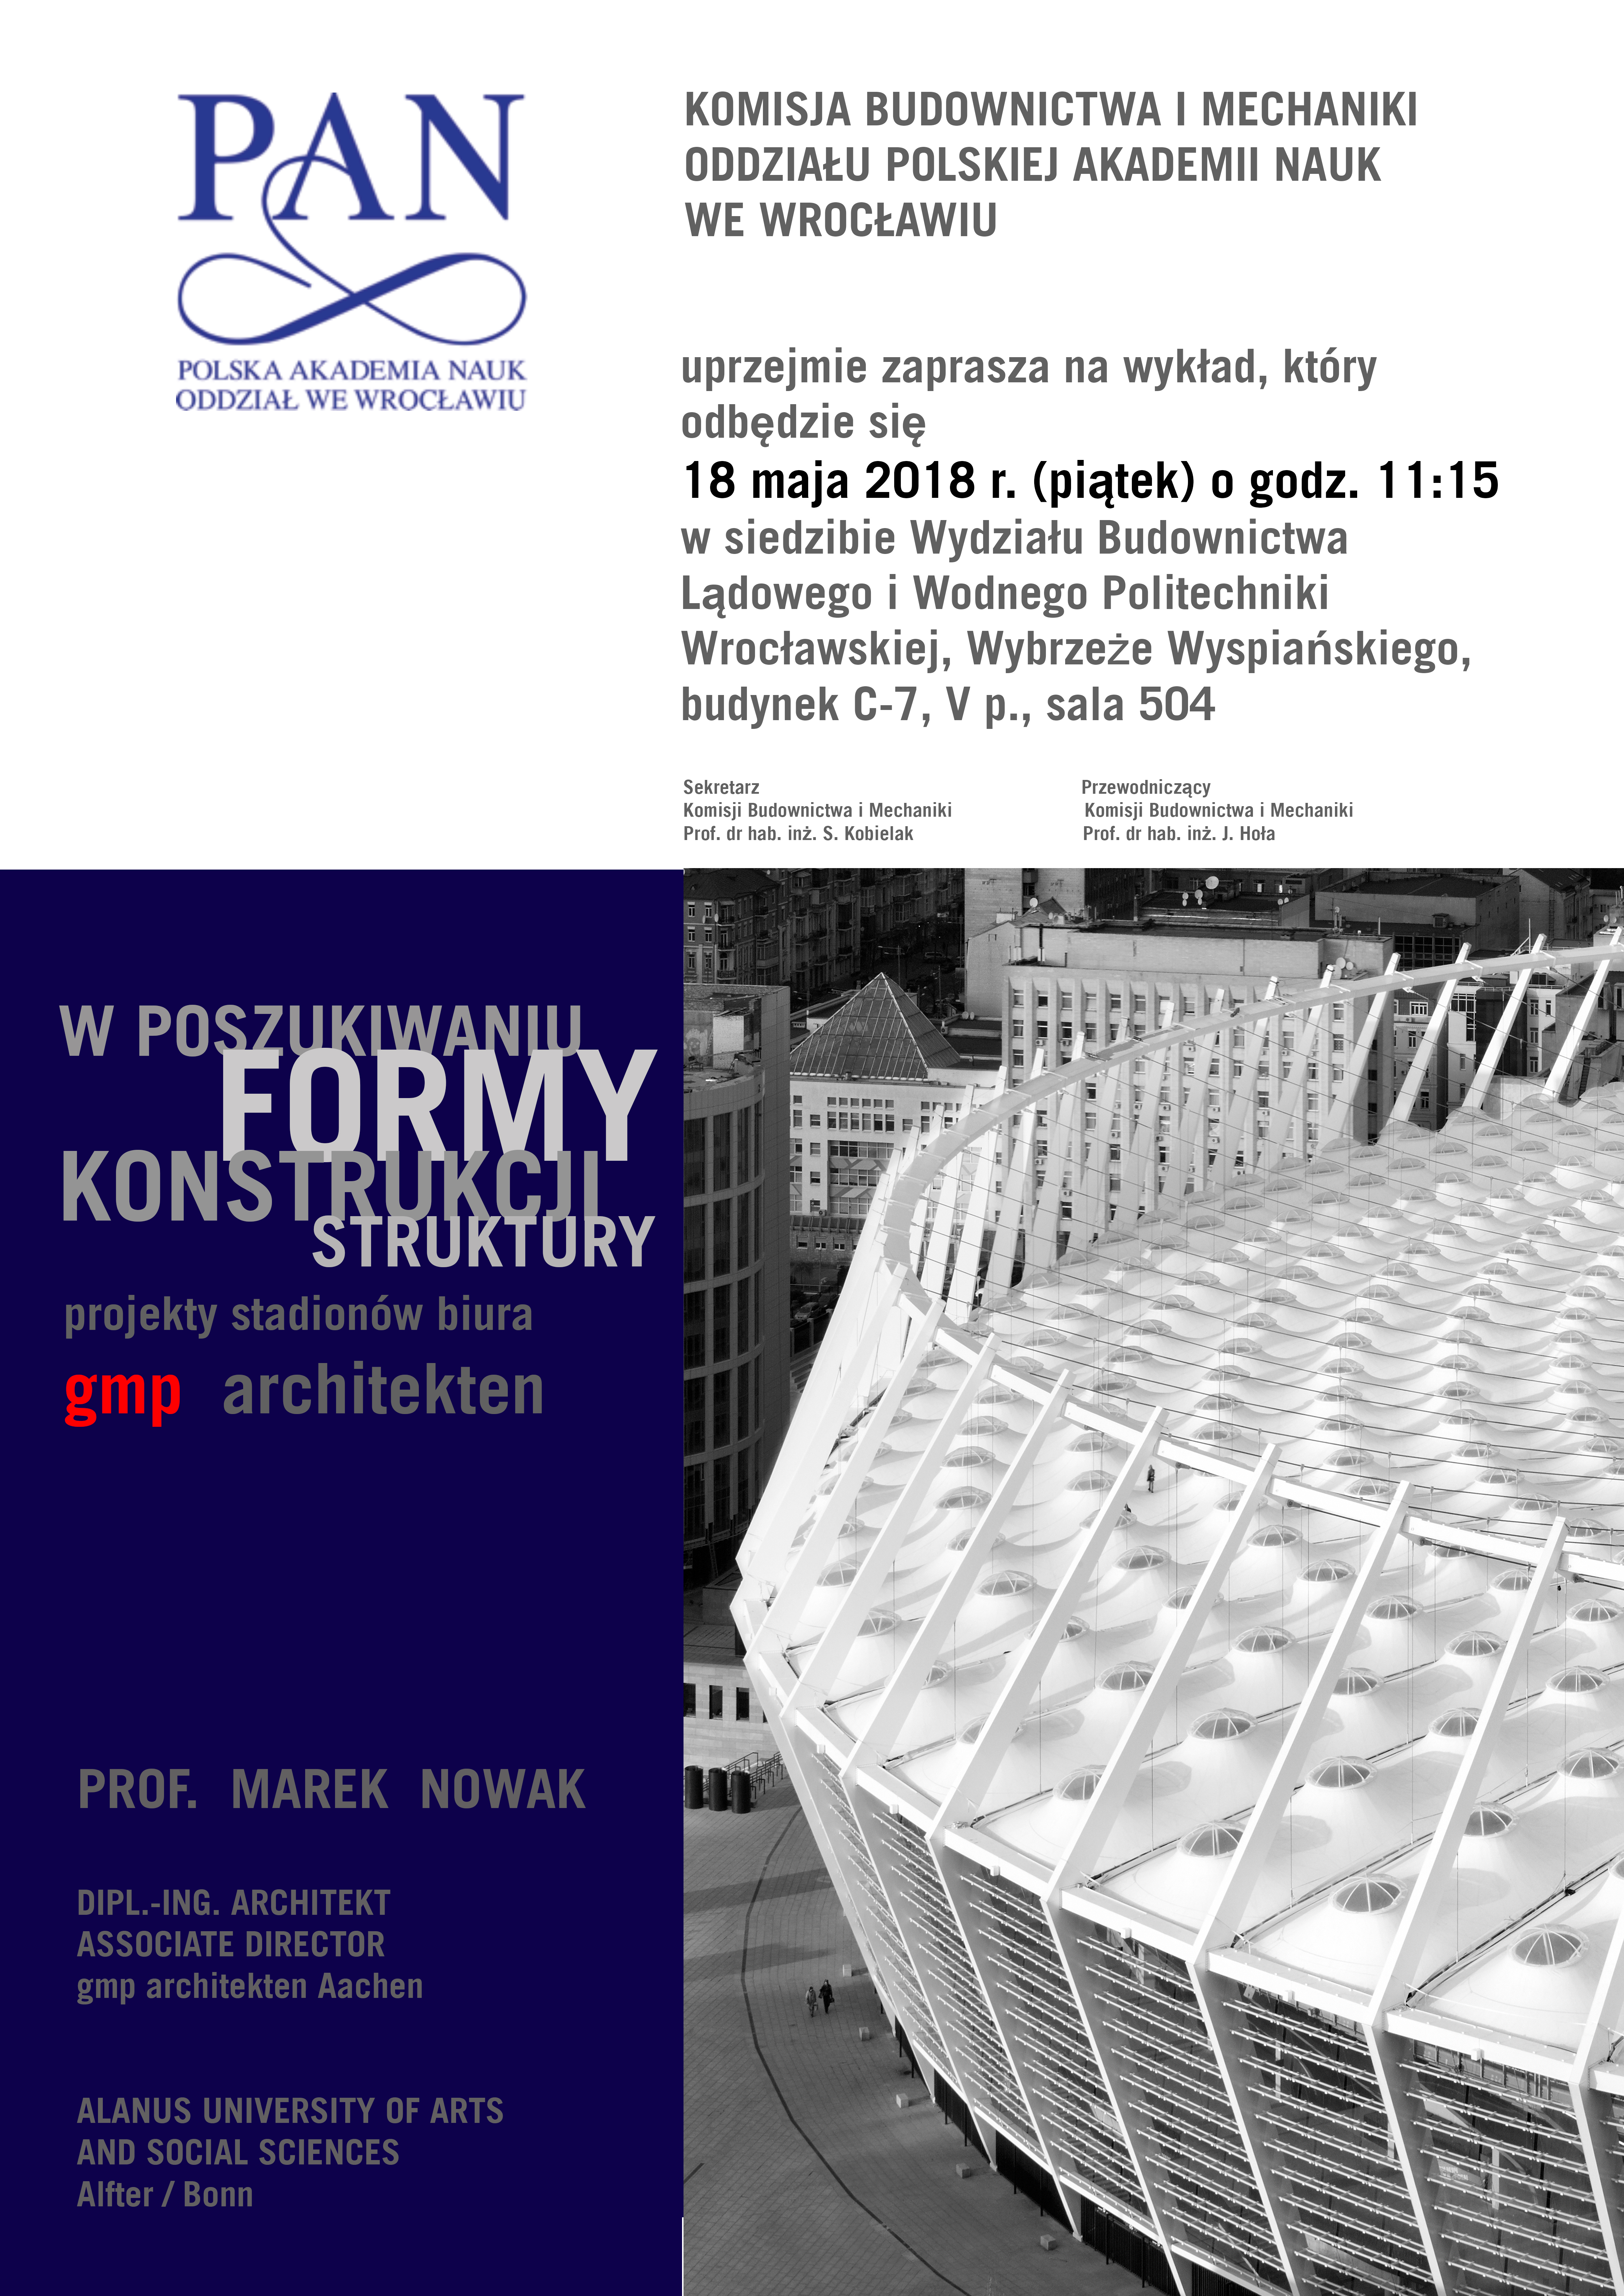 2018 05 Plakat wykład Prof. M. Nowaka